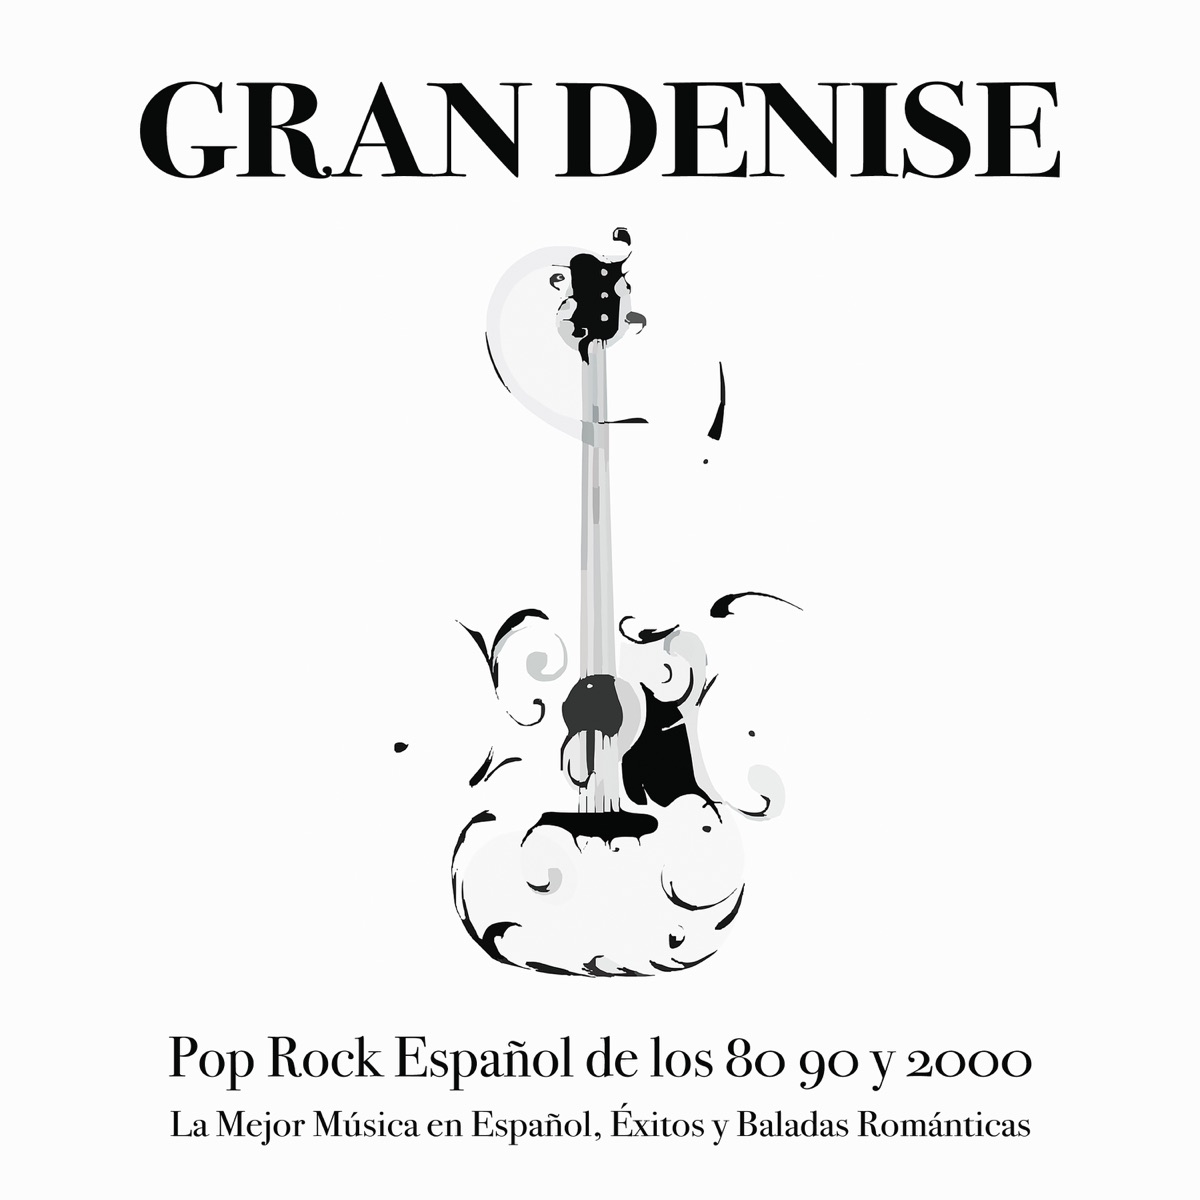 Pop Rock Español de los 80 90 y 2000: La Mejor Música en Español, Éxitos y  Baladas Románticas - Album by Gran Denise - Apple Music